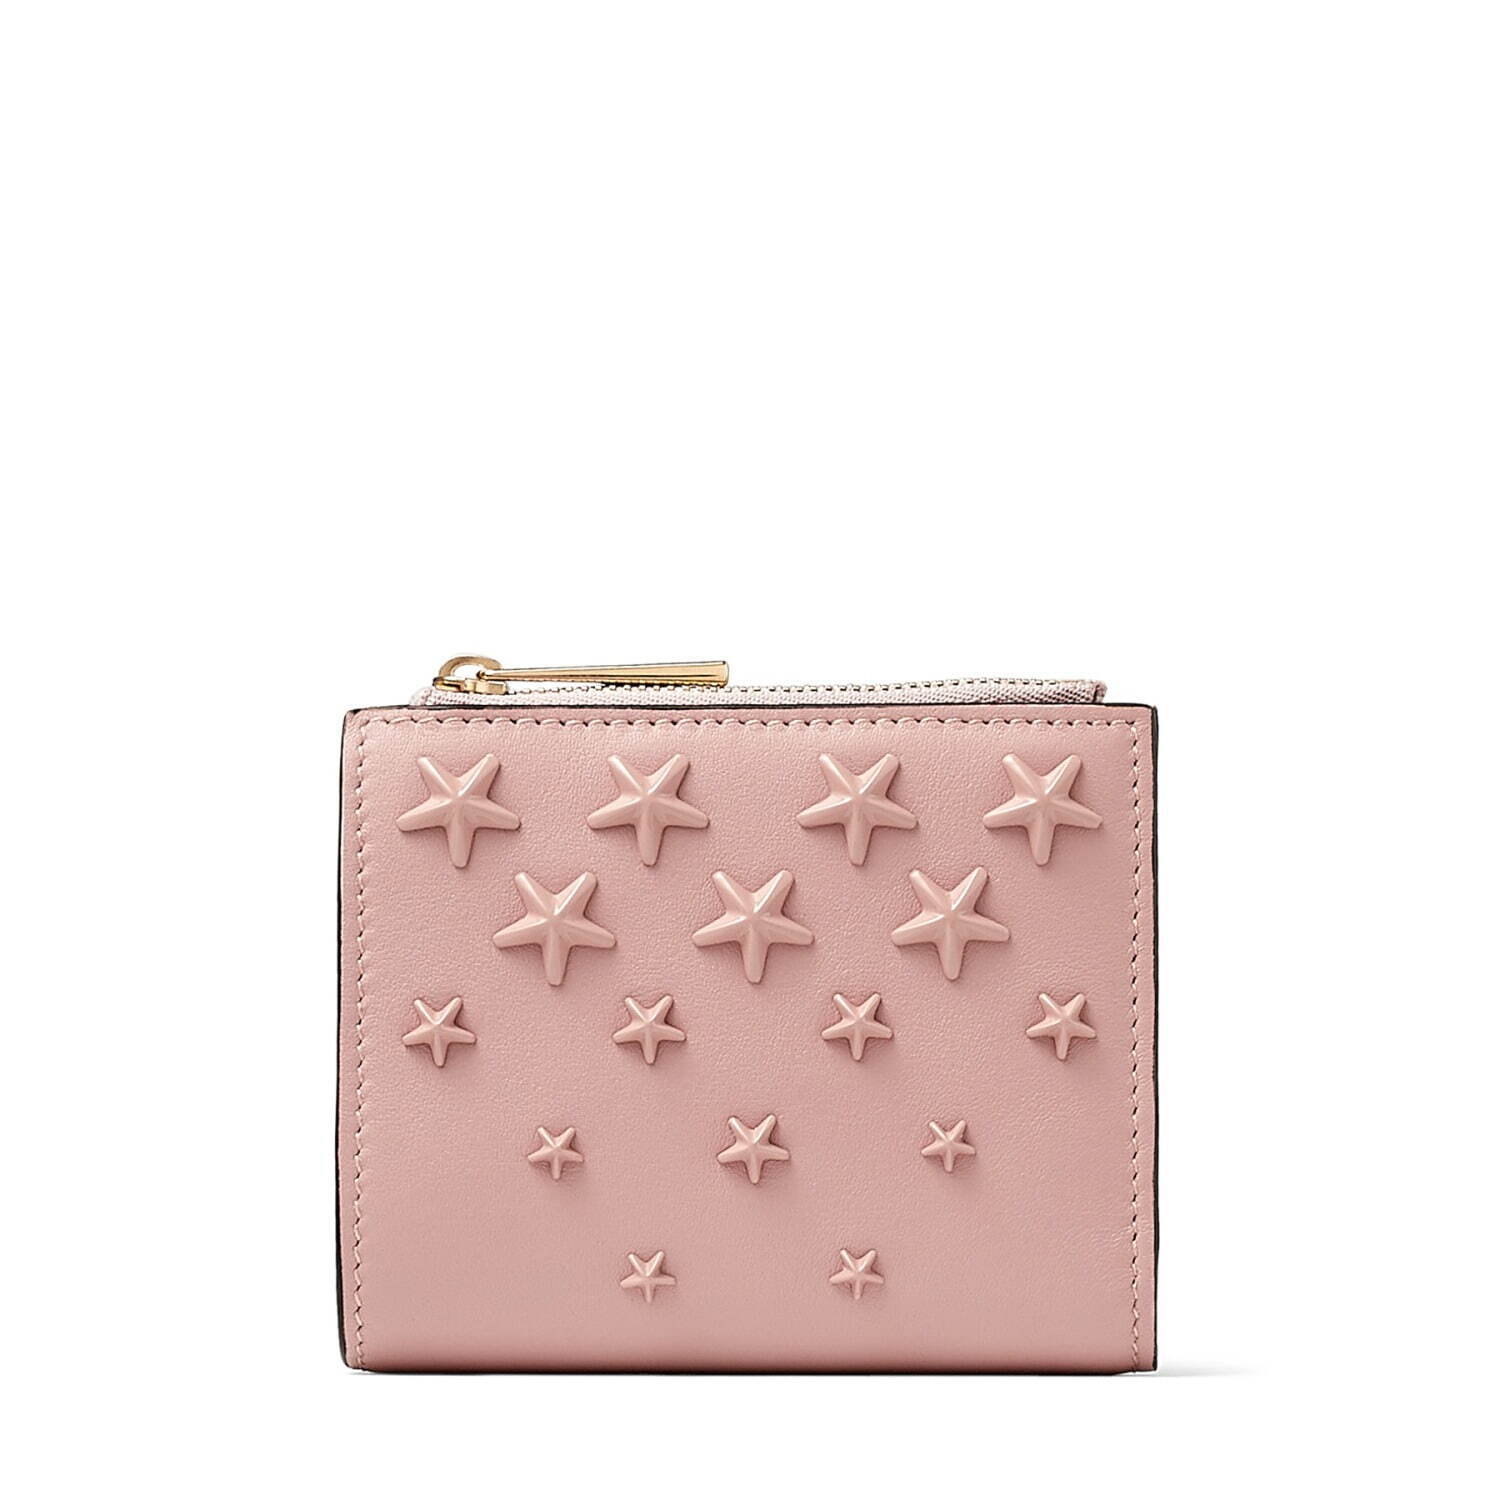 ジミー チュウ22年春夏の新作スモールレザーグッズ、スタースタッズ×桜ピンクの二つ折り財布やミニ財布